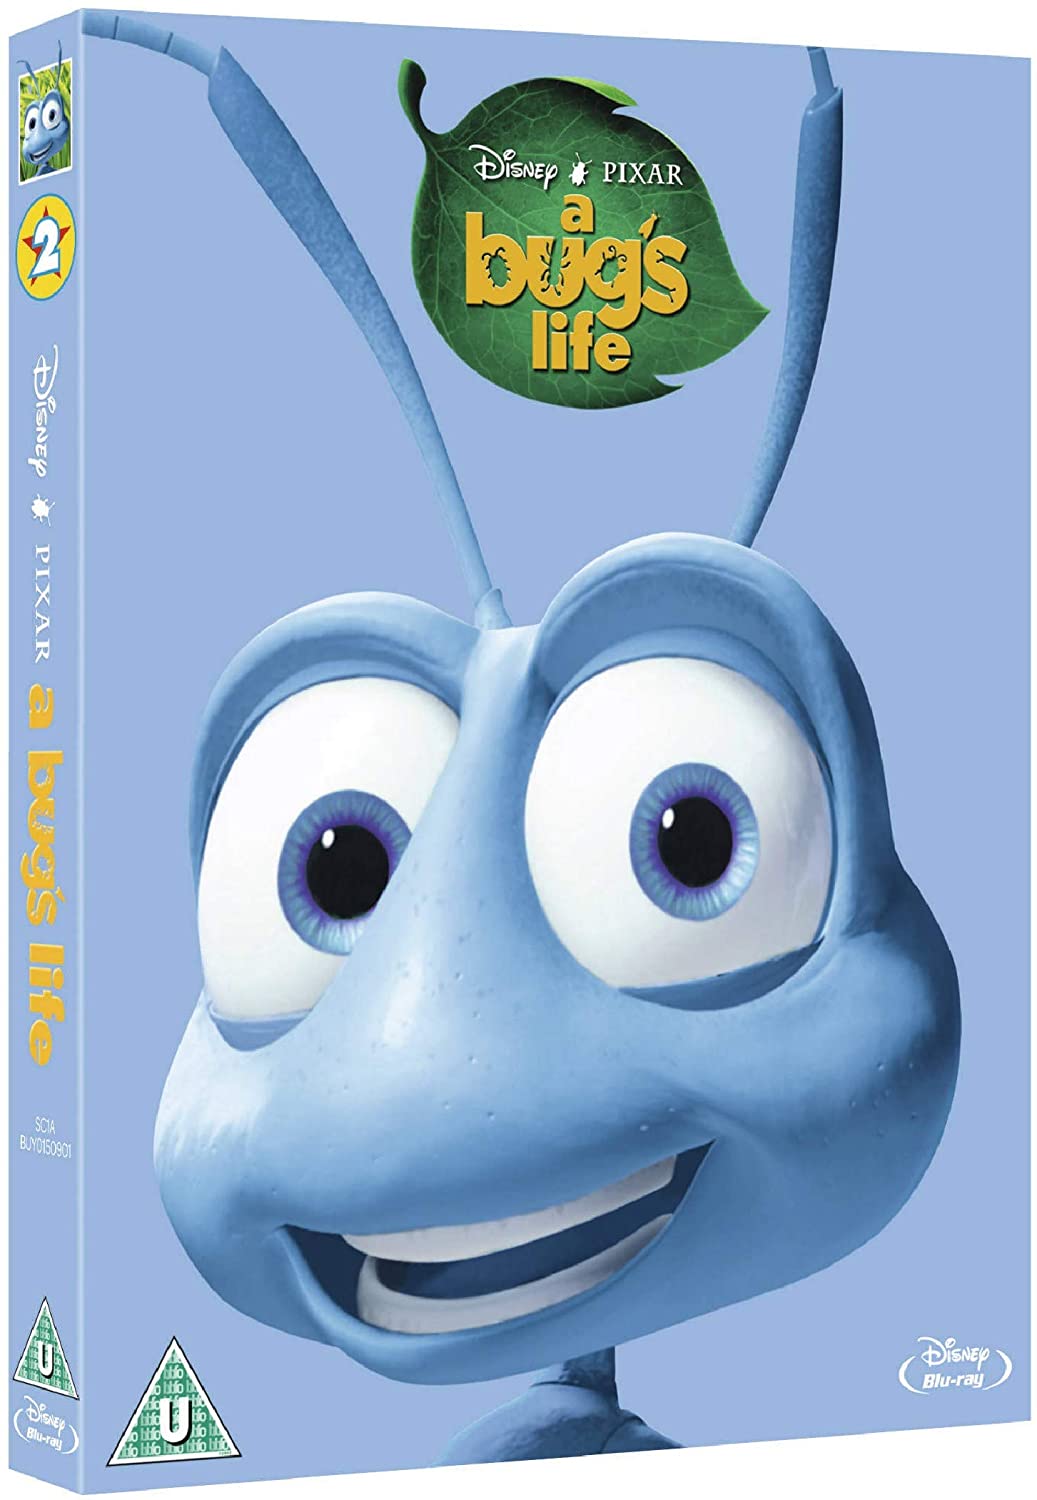 La vida de un insecto [Blu-ray]